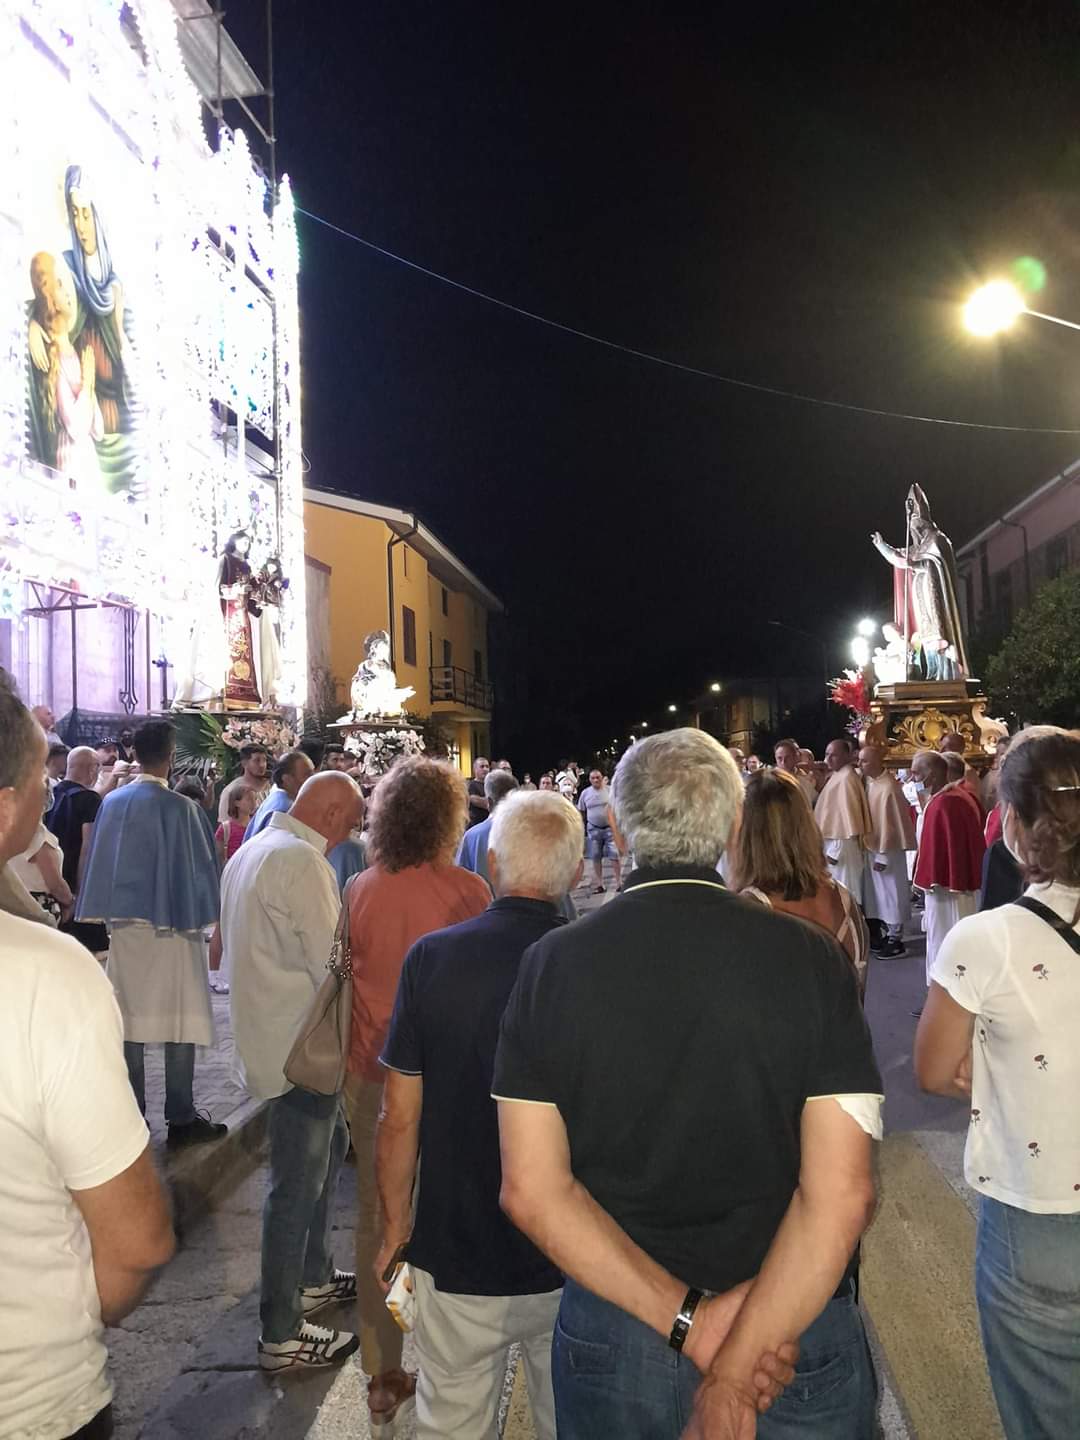 Forino (Av): Il ritorno di San Nicola nel toccante incontro di bentornato con Sant Anna, Santa Maria del Carmelo, San Michele e San Felicissimo